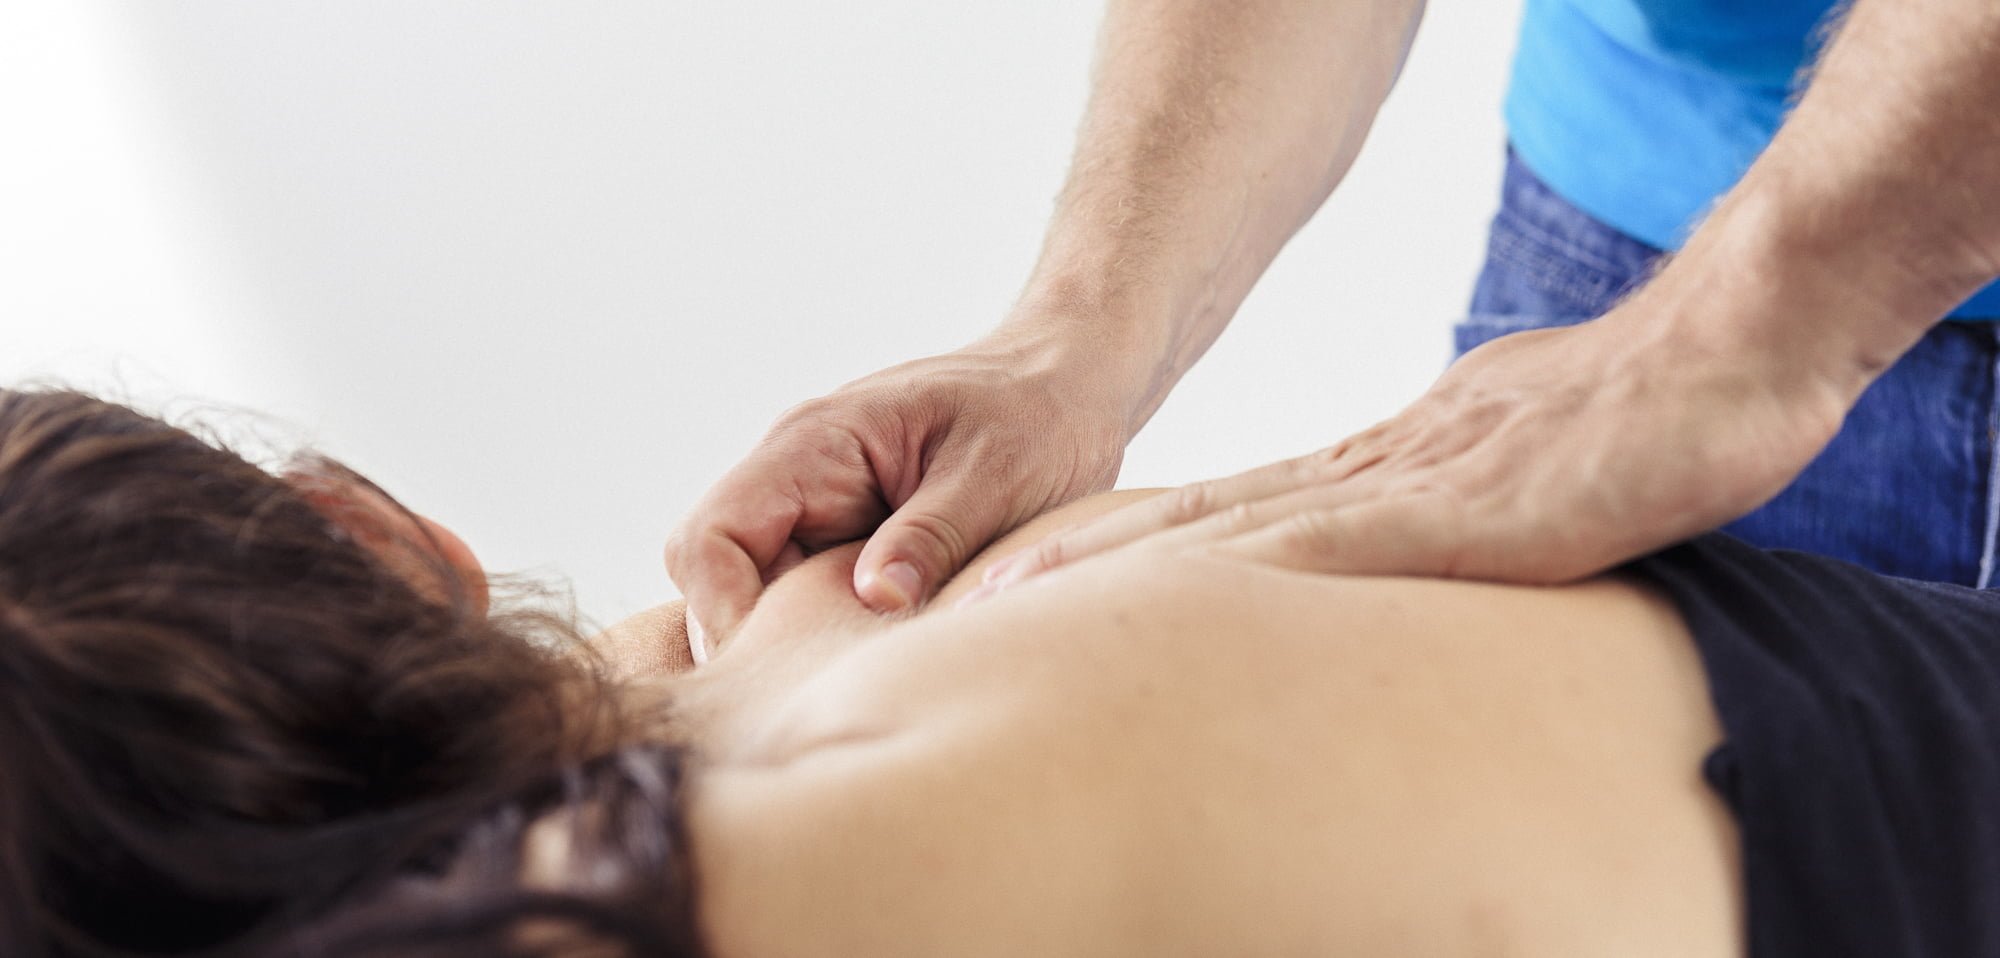 fysio massage in Arnhem | Fysio Donders